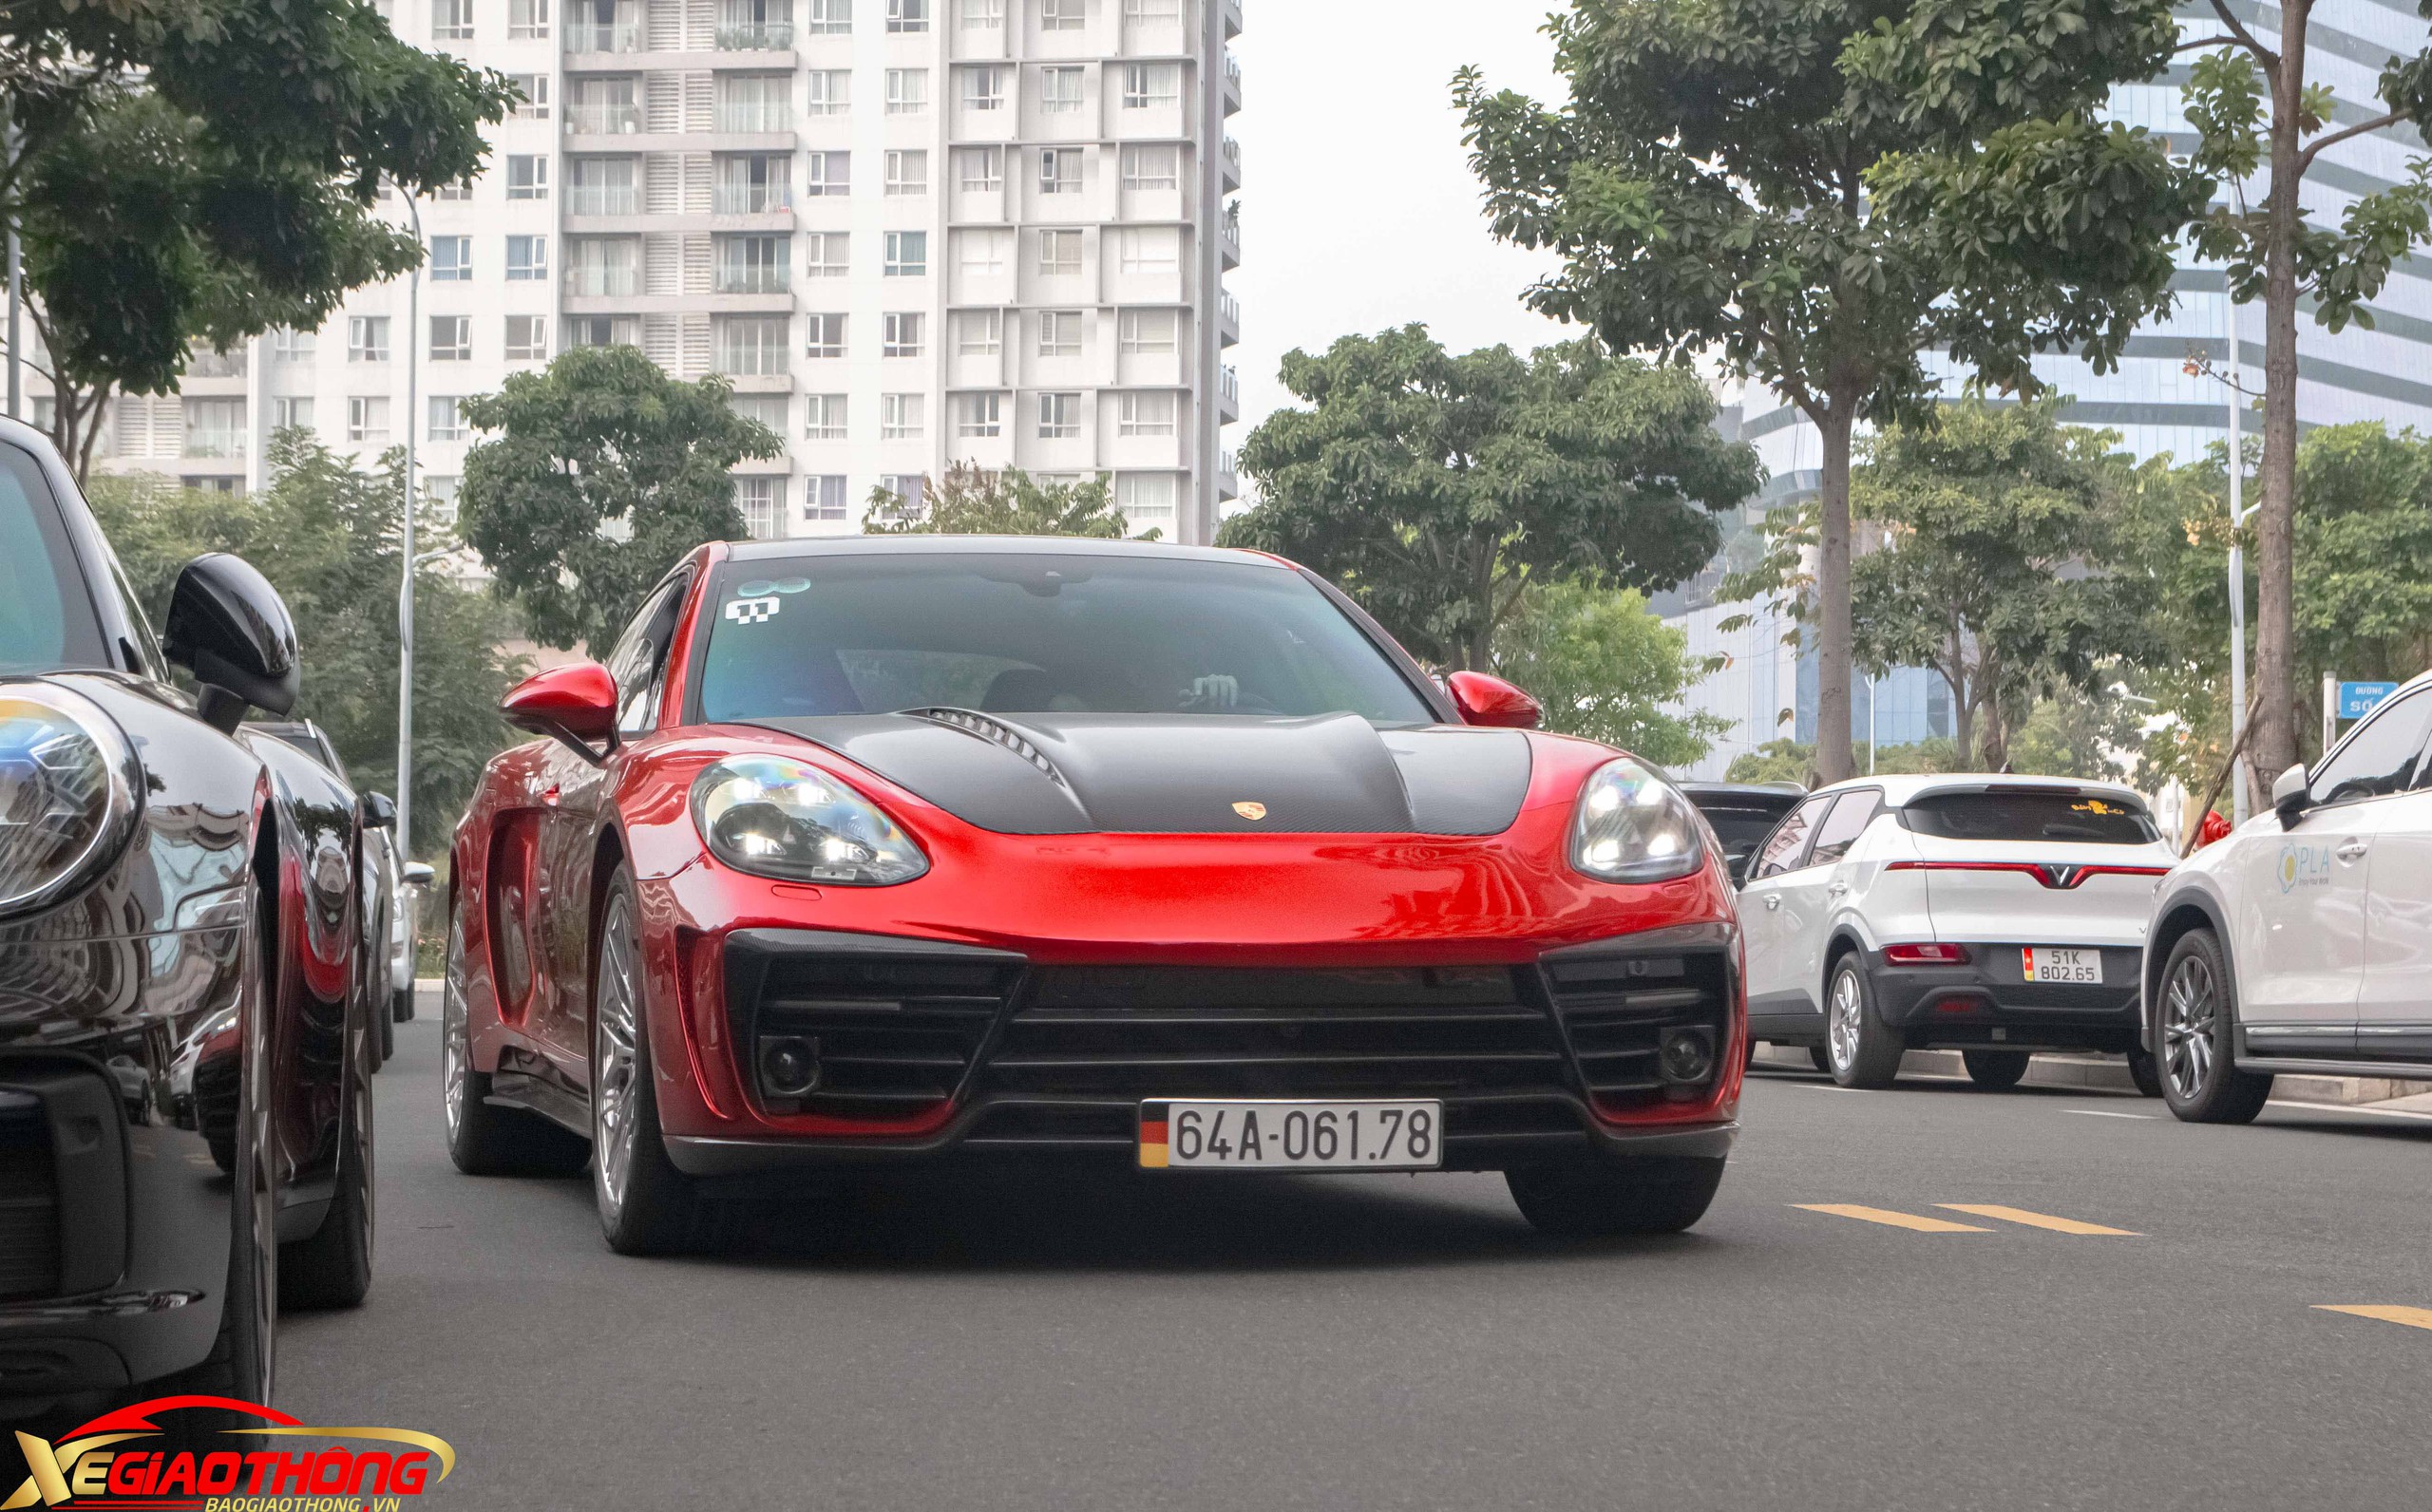 Porsche Panamera GTR Edition độc nhất Việt Nam có gì đặc biệt?- Ảnh 4.